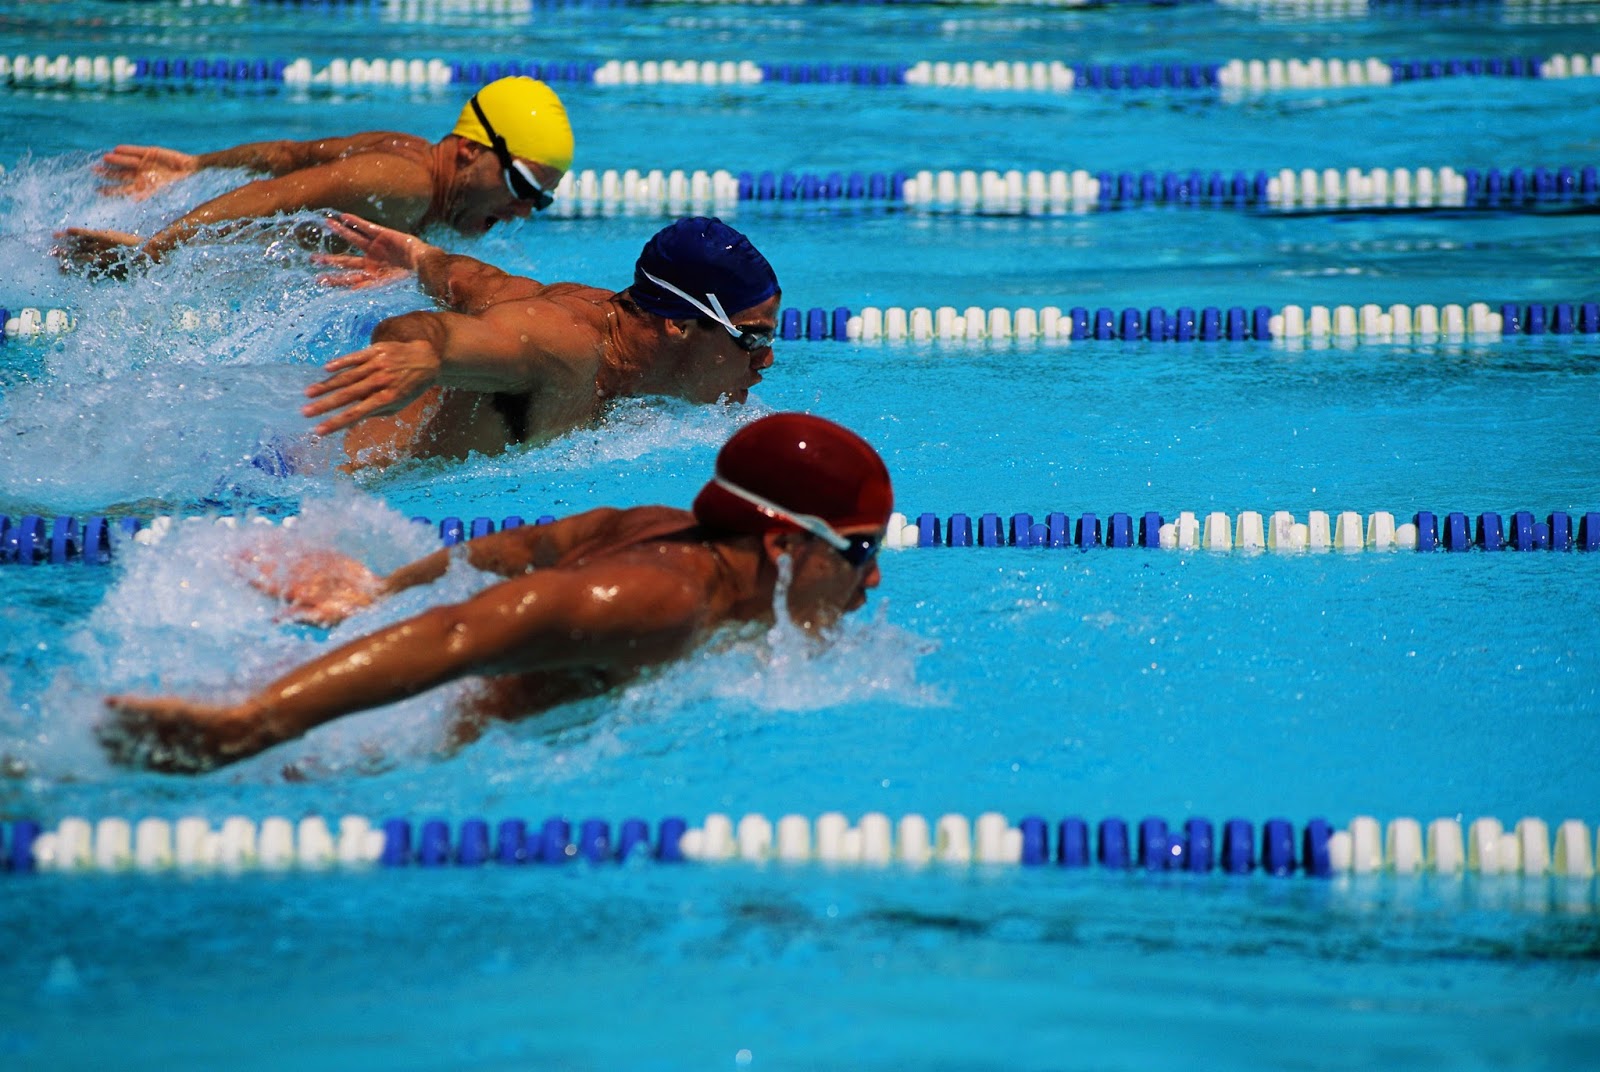 Memahami Pesona Olahraga Berenang yang Menarik Banyak Orang